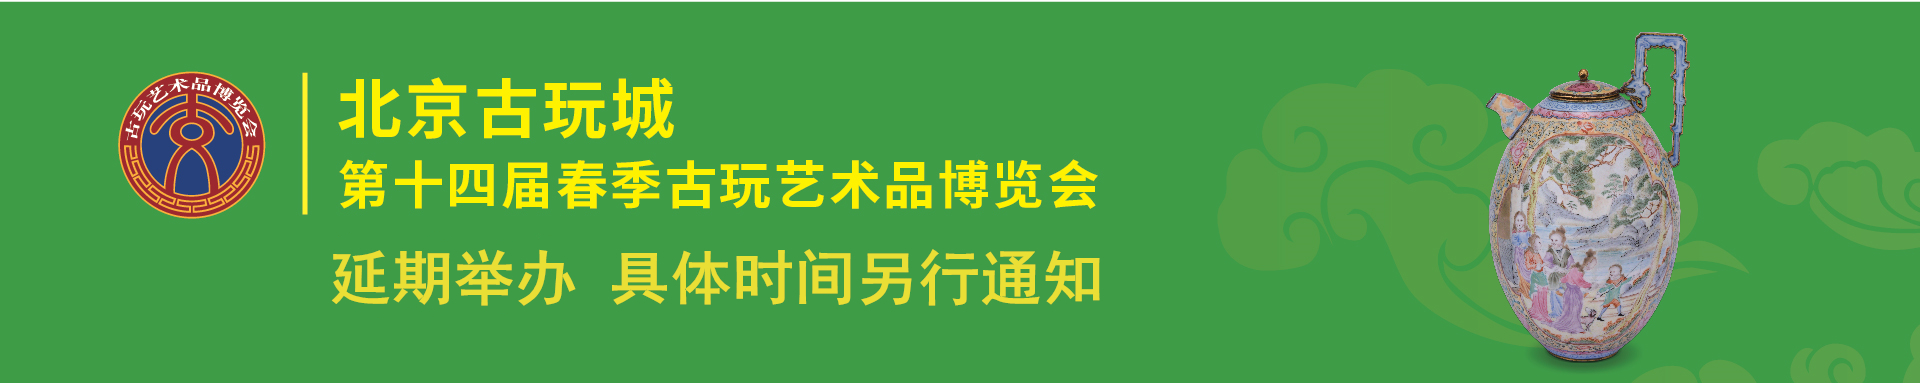 延期公告丨北京古玩城第十四届春季古玩艺术品博览会延期公告